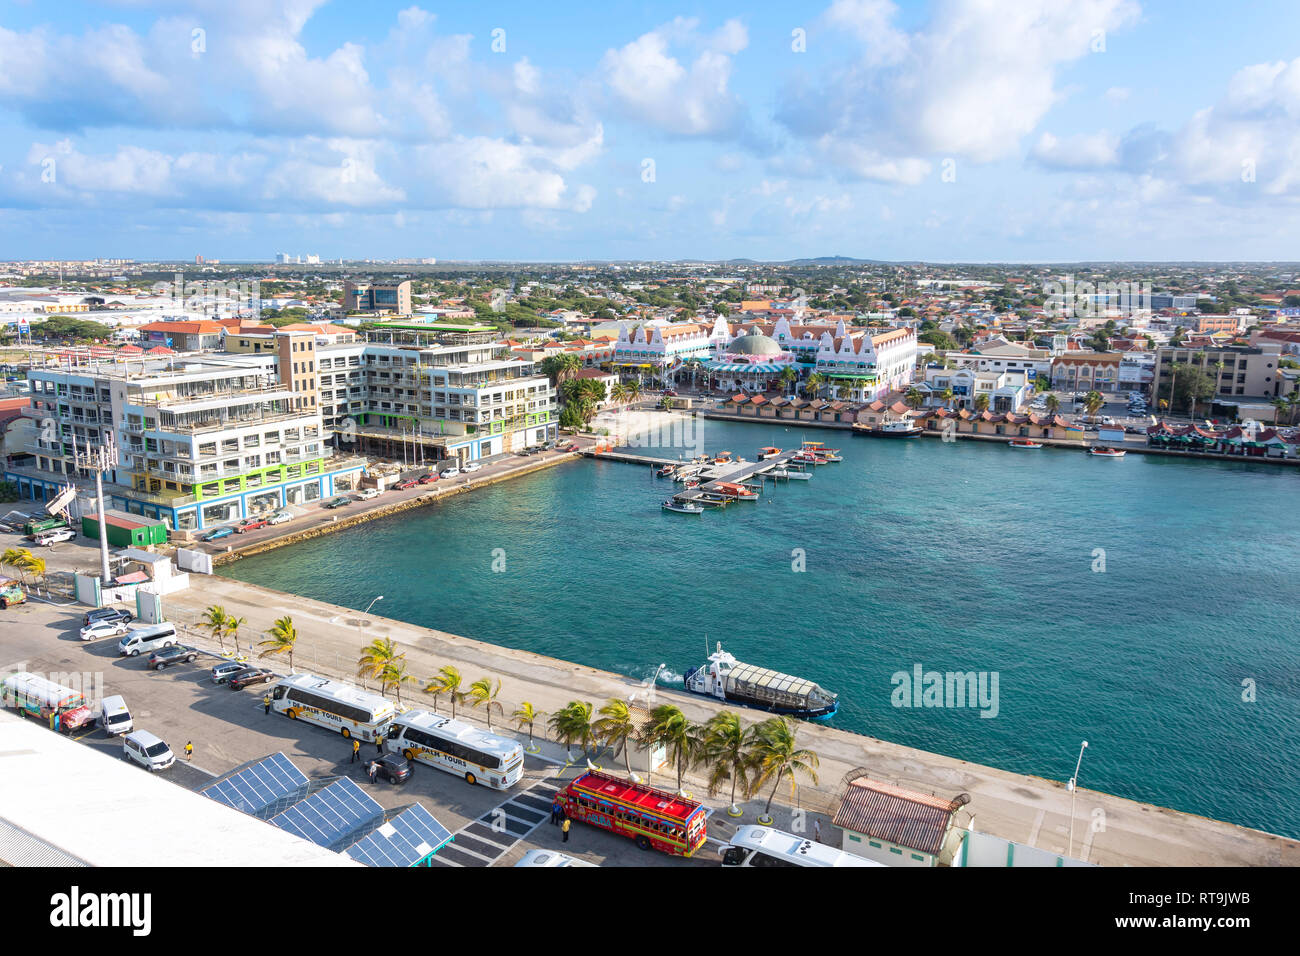 Vue de la ville et le port d'un navire de croisière, Oranjestad, Aruba, les îles ABC sous le vent, Antilles, Caraïbes Banque D'Images